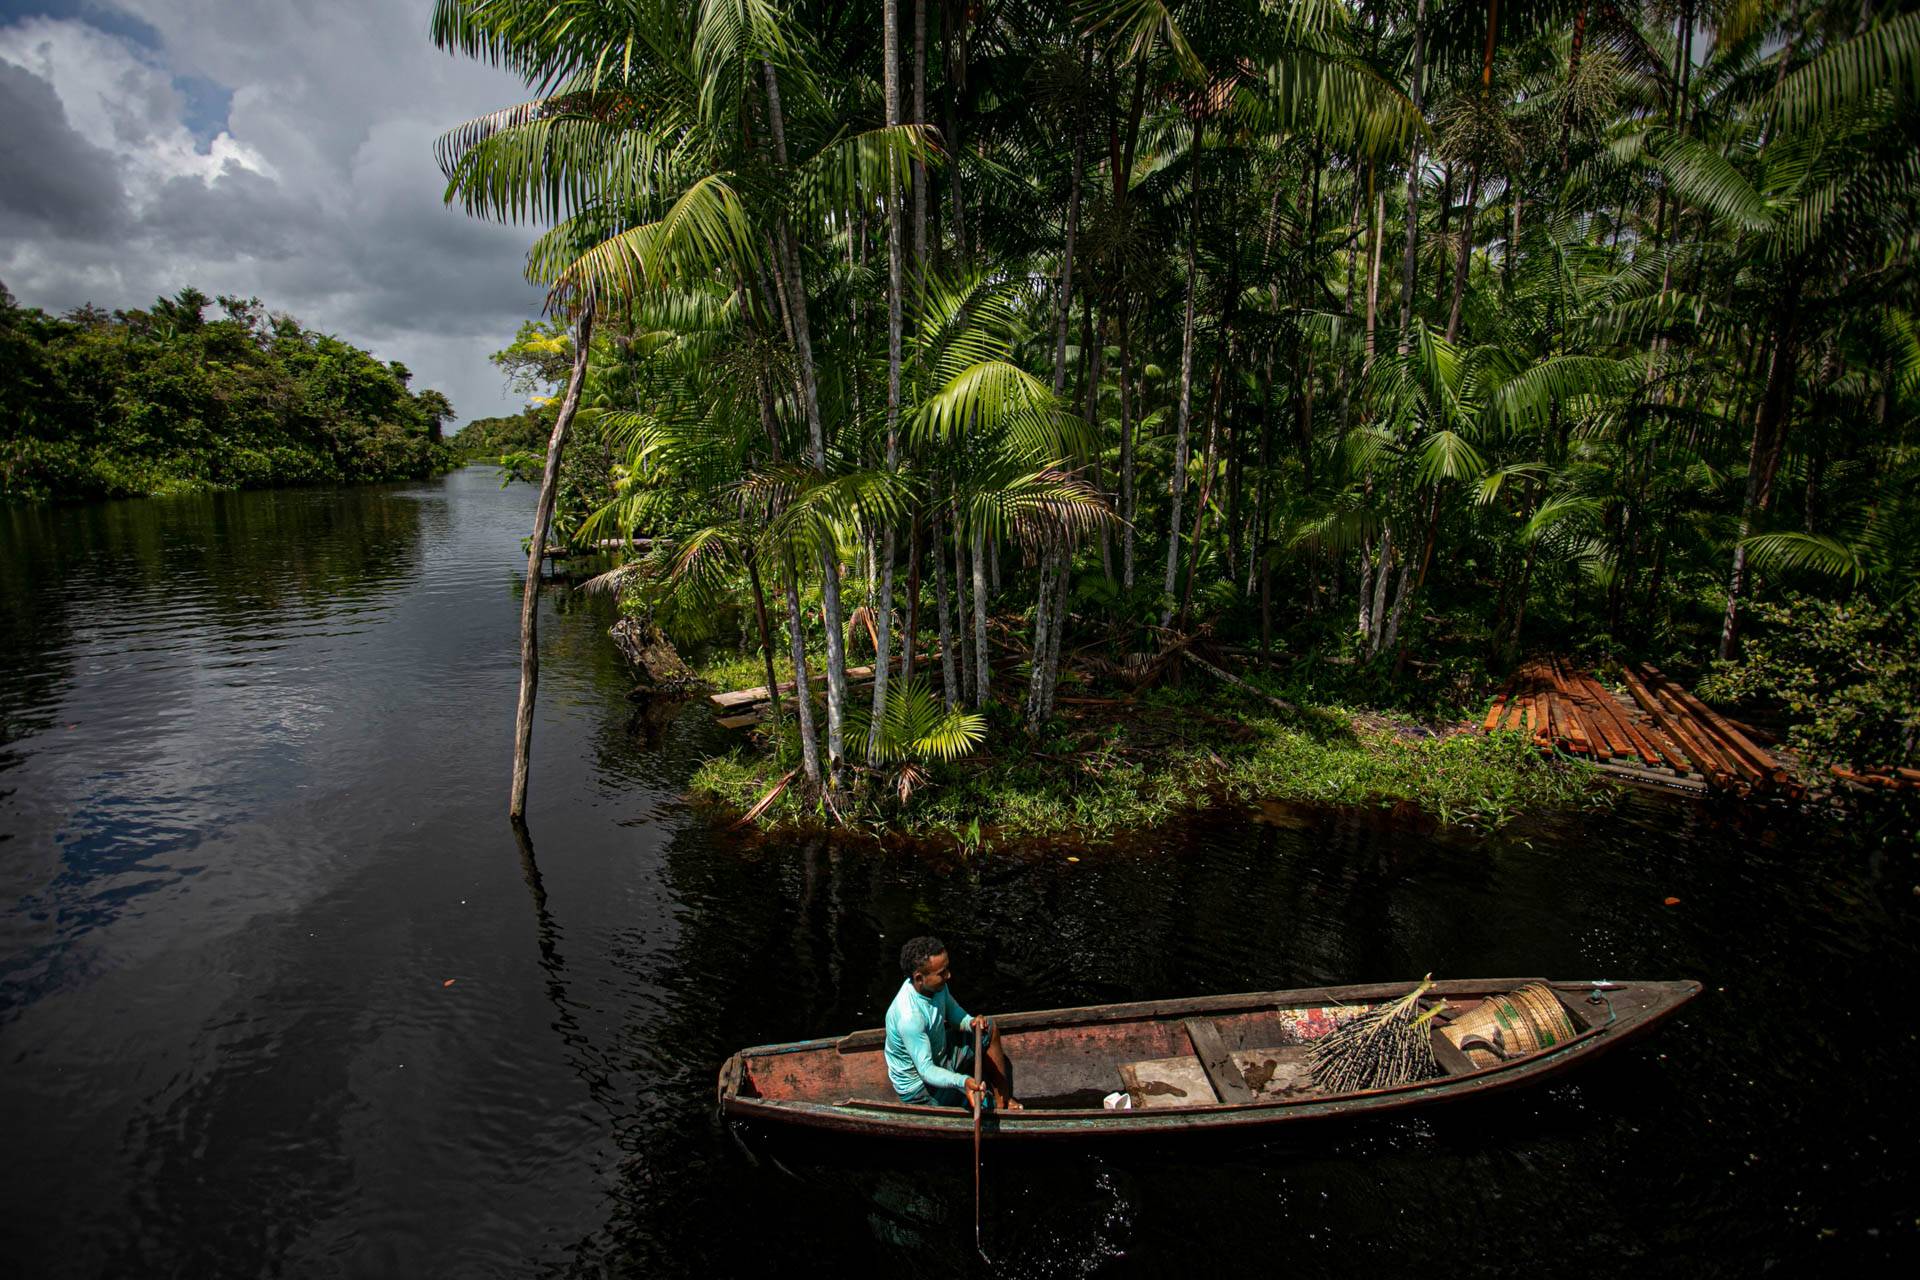 O coletor de açaí Jesus Silva, 23 anos, morador da comunidade ribeirinha de São José, pega açaí em seu barco ao longo do rio perto de Melgaço, a sudoeste da Ilha de Marajó, estado do Pará, Brasil. Foto: Tarso Sarraf / AFP